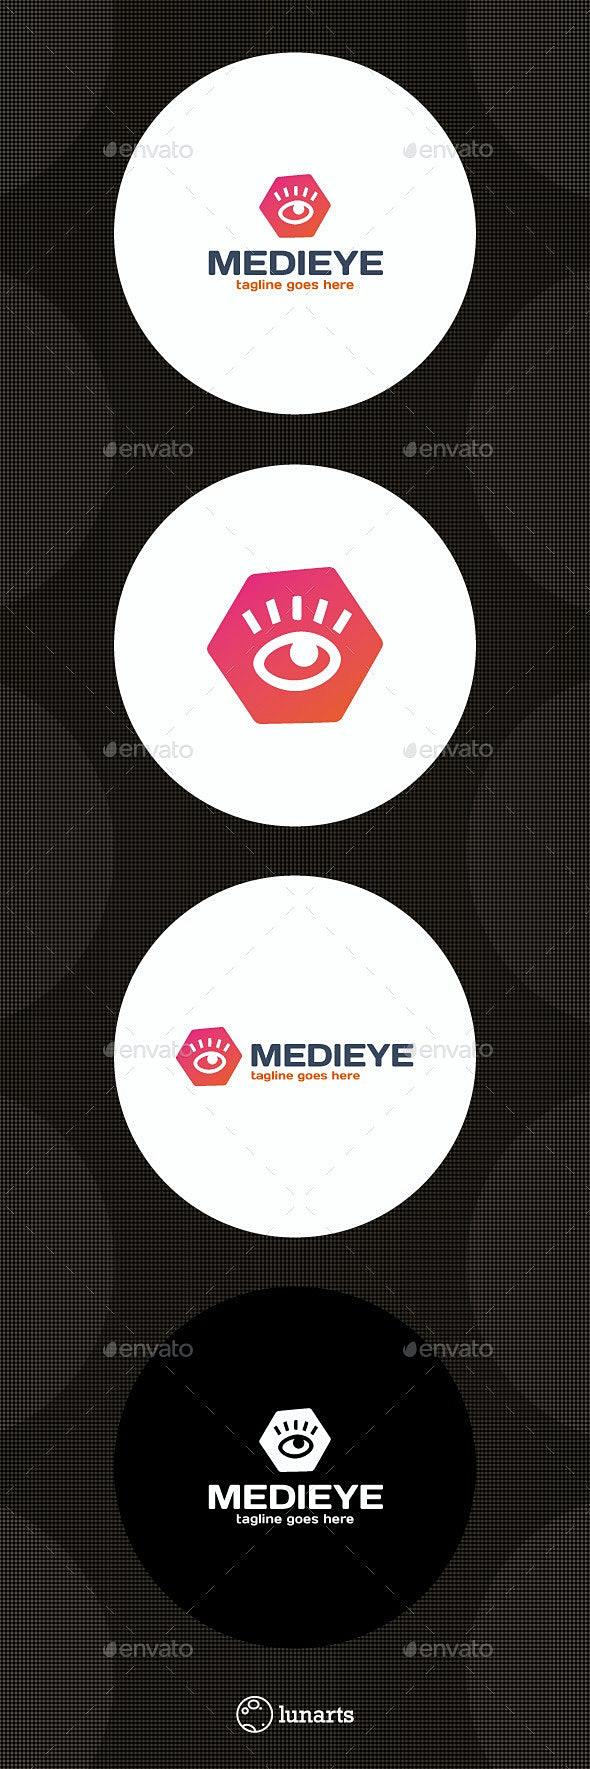 Media Eye Logo - Hex...